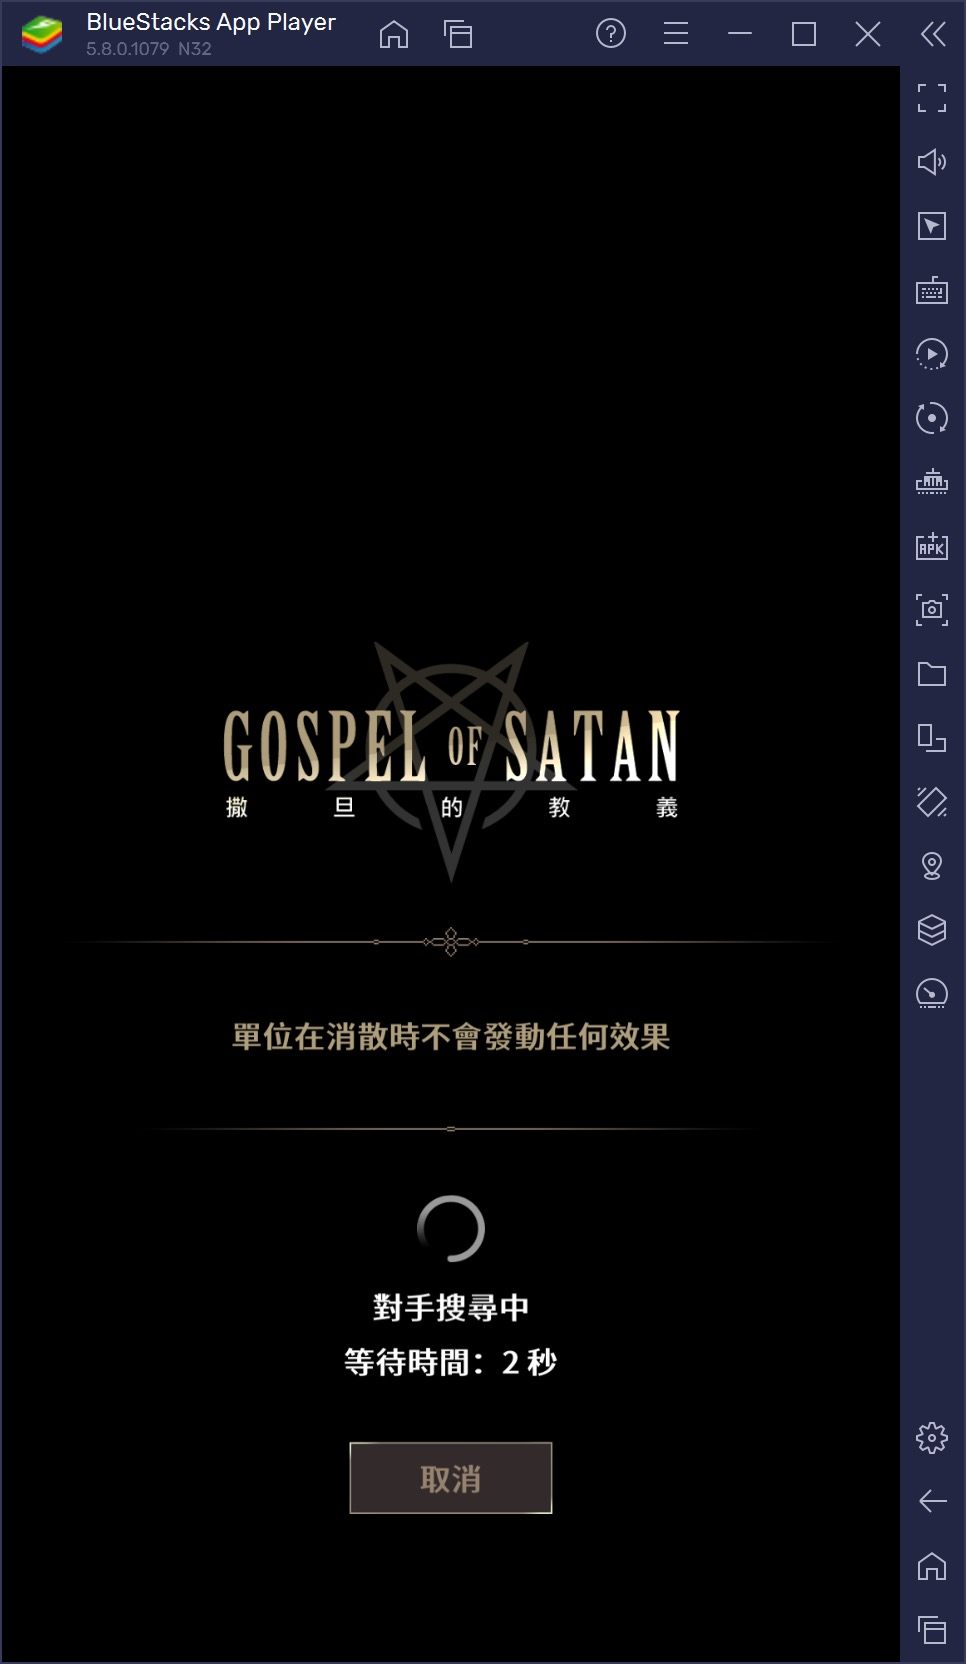 如何使用BlueStacks在電腦上玩策略手遊《撒旦的教義 Gospel of Satan》